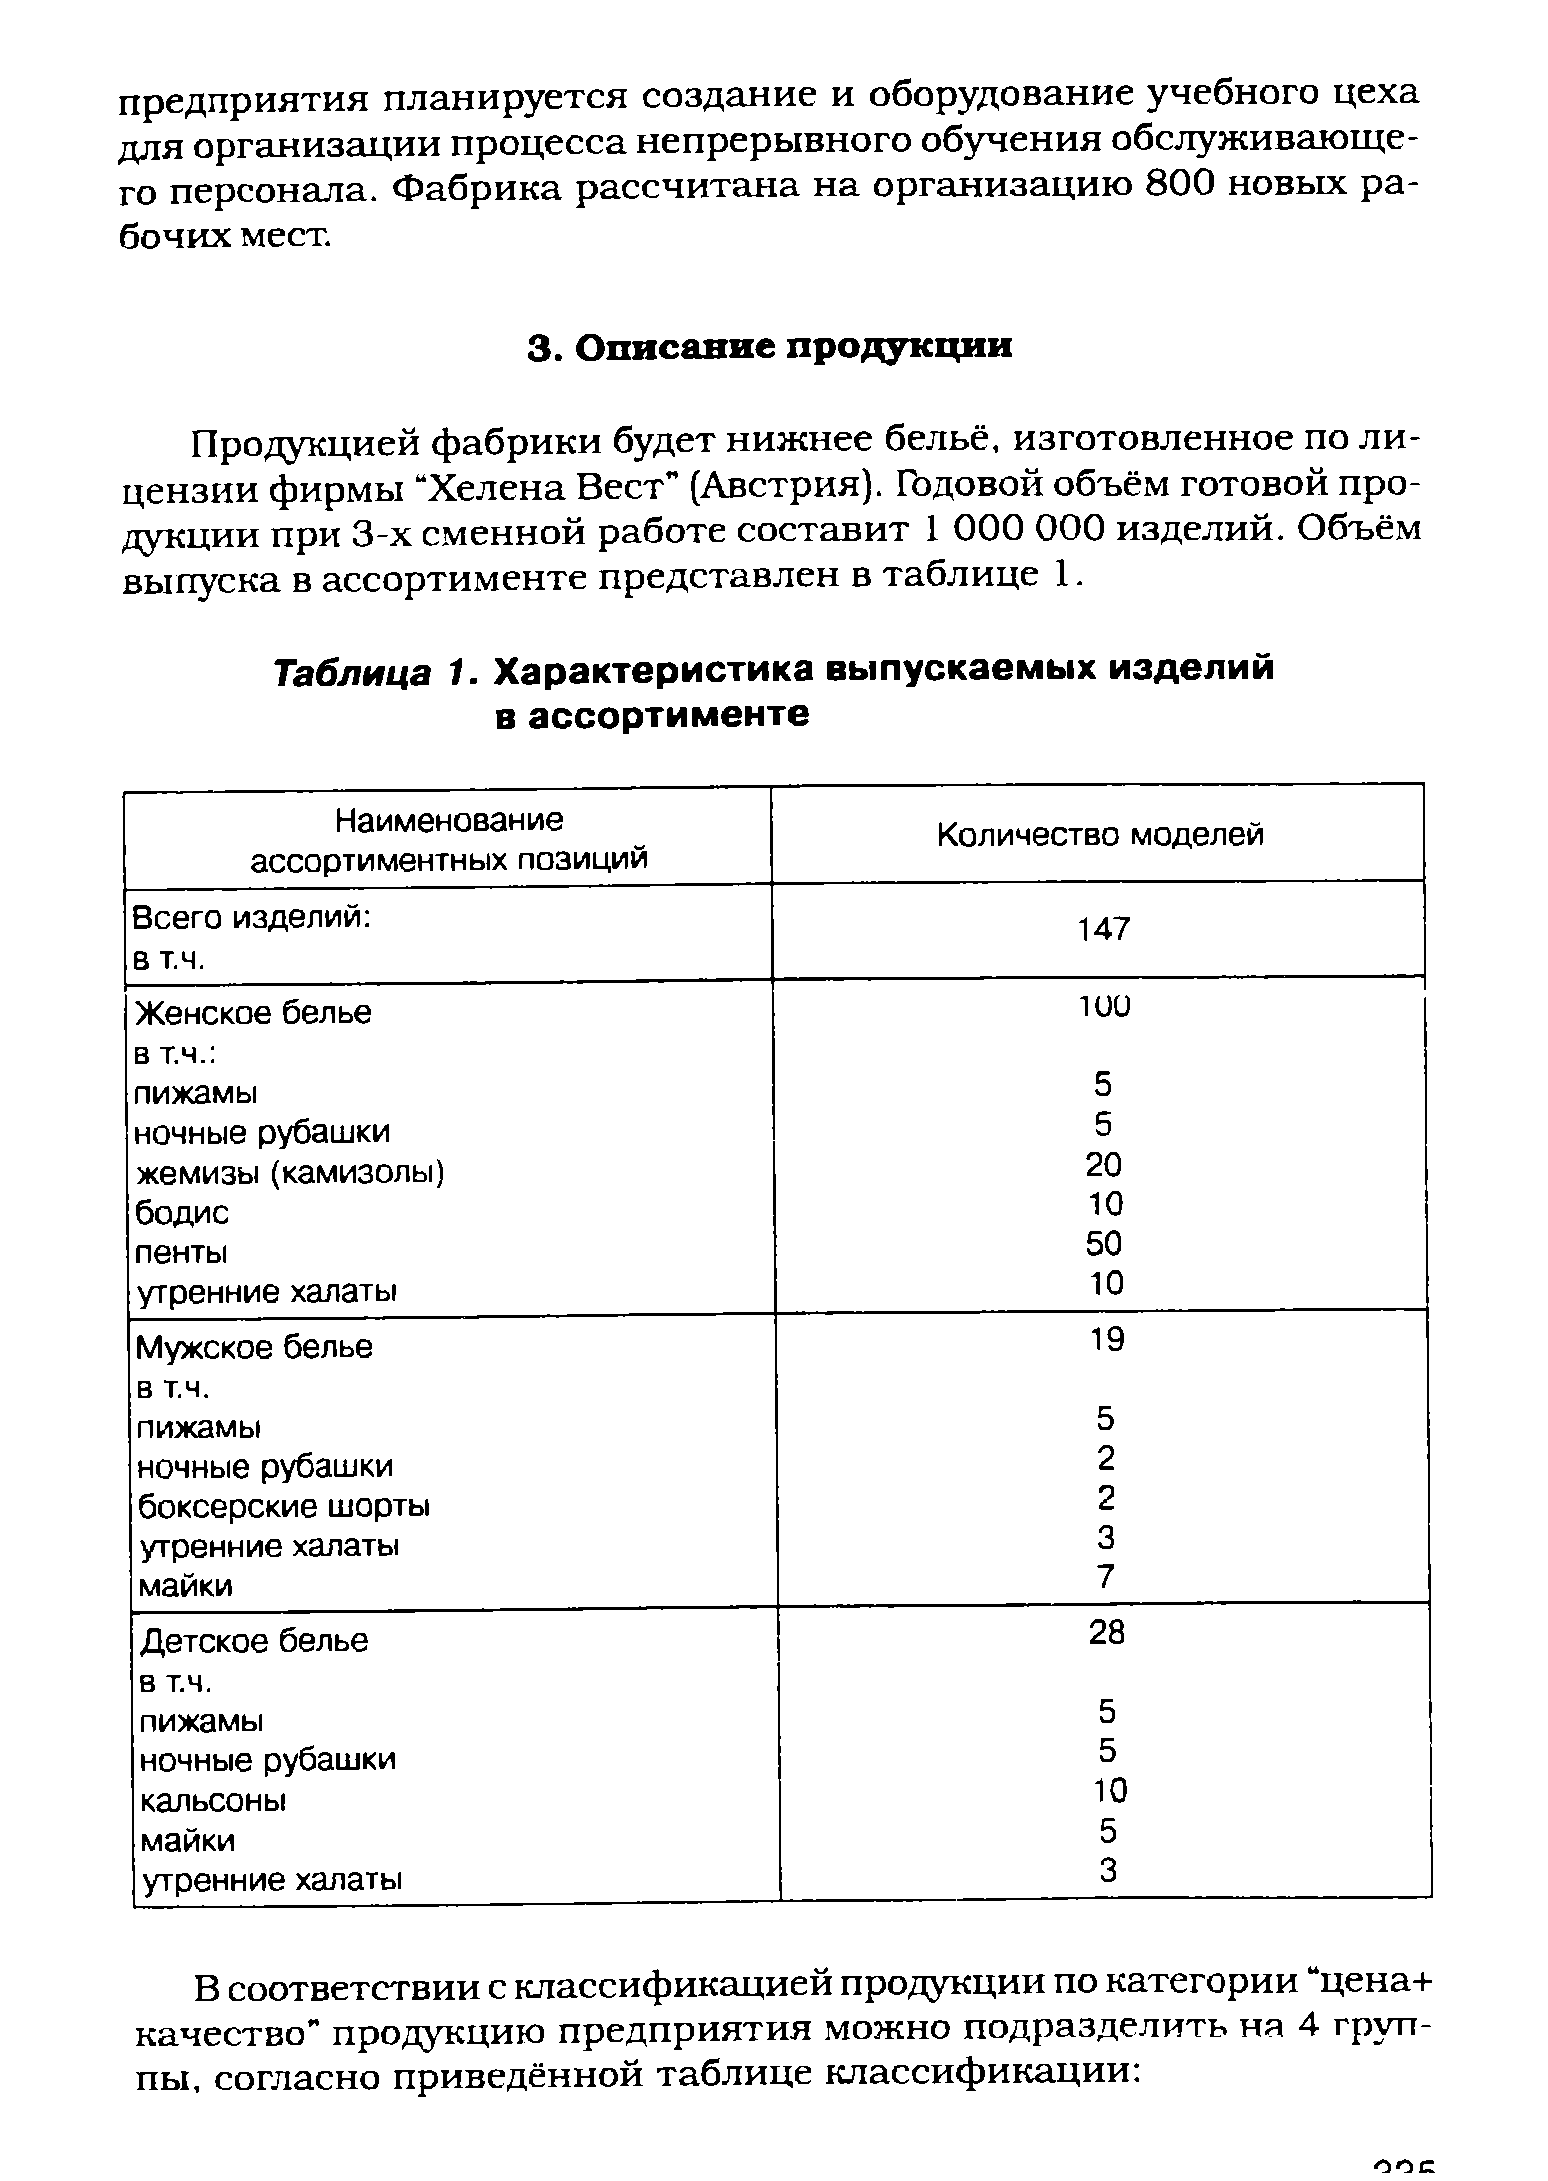 Таблица 1. Характеристика выпускаемых изделий в ассортименте
